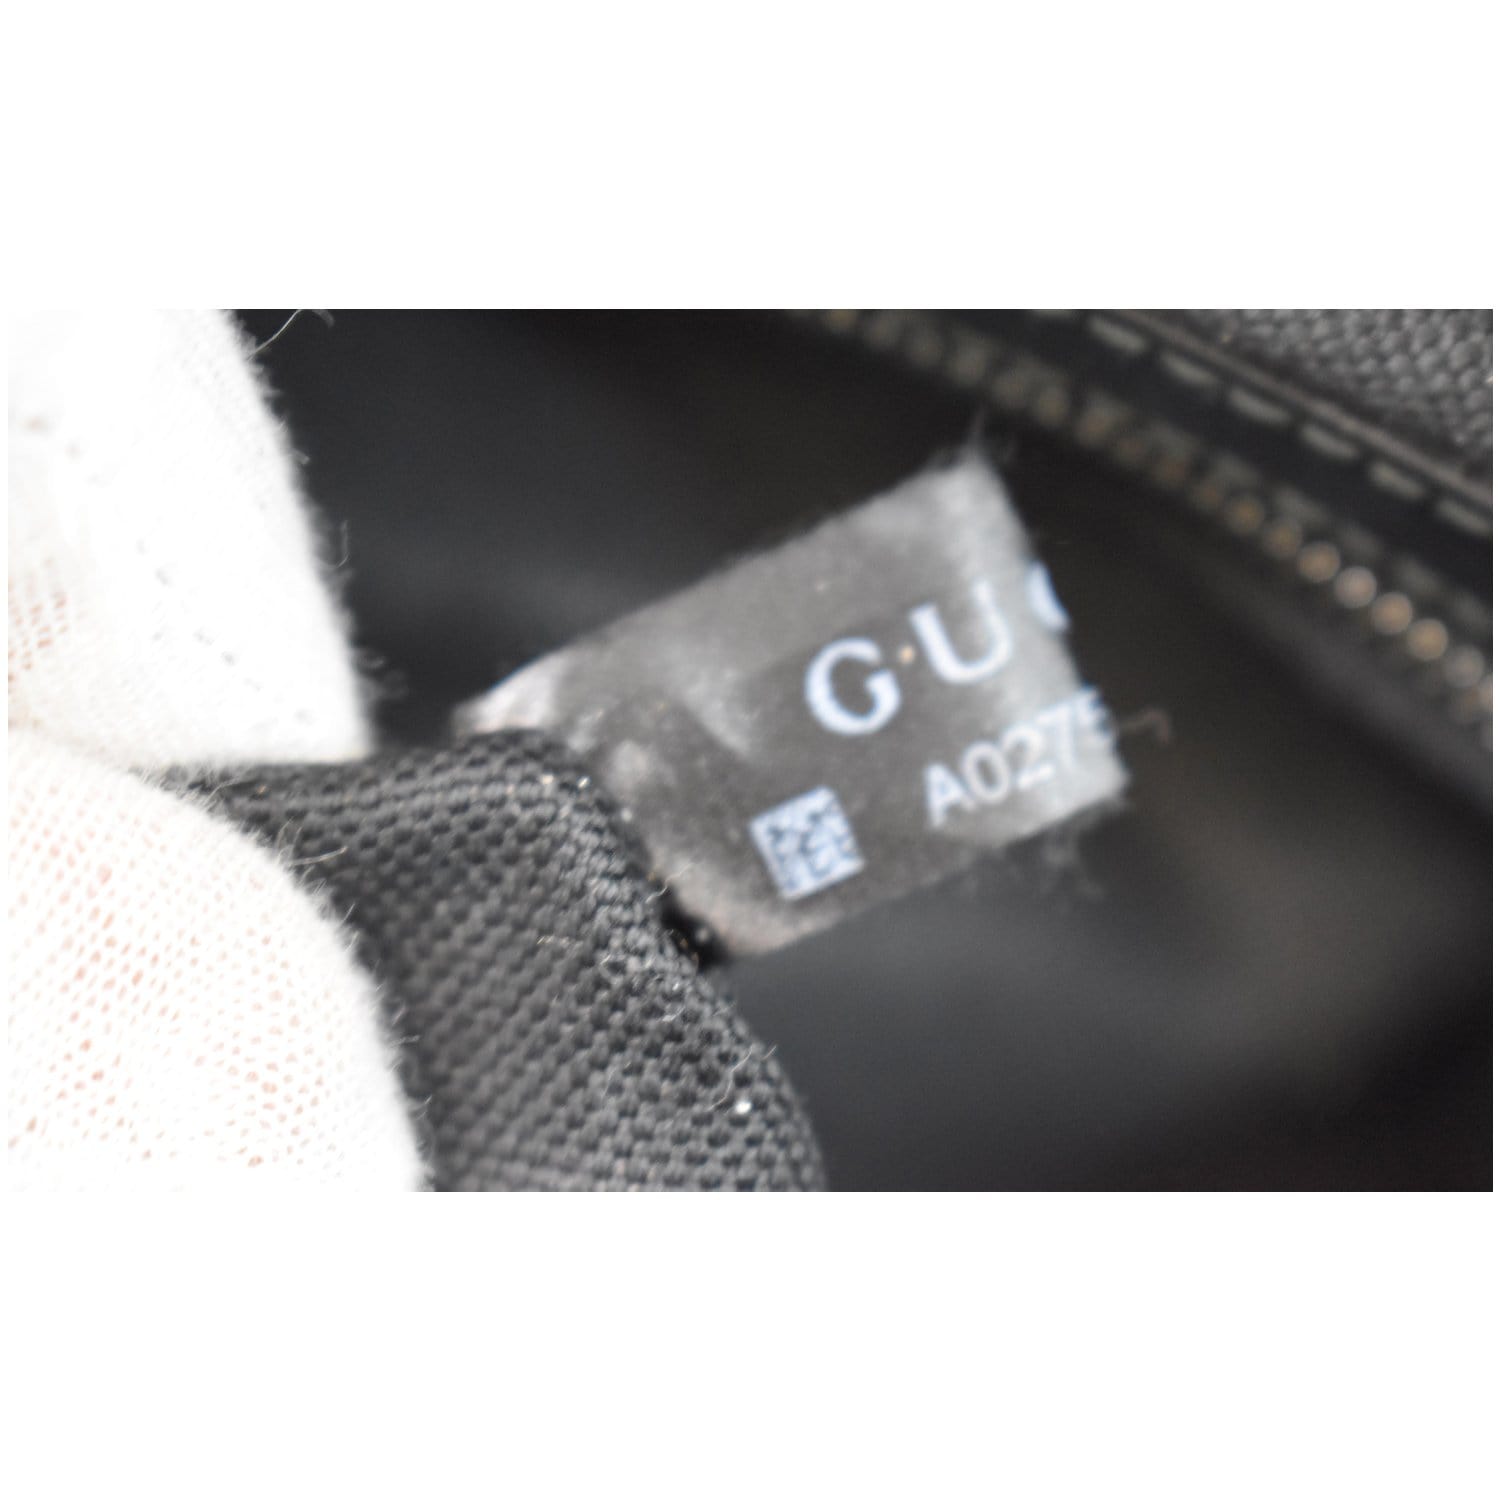 Gucci GG Supreme Leather Trim Belt Bumbag Bag Black